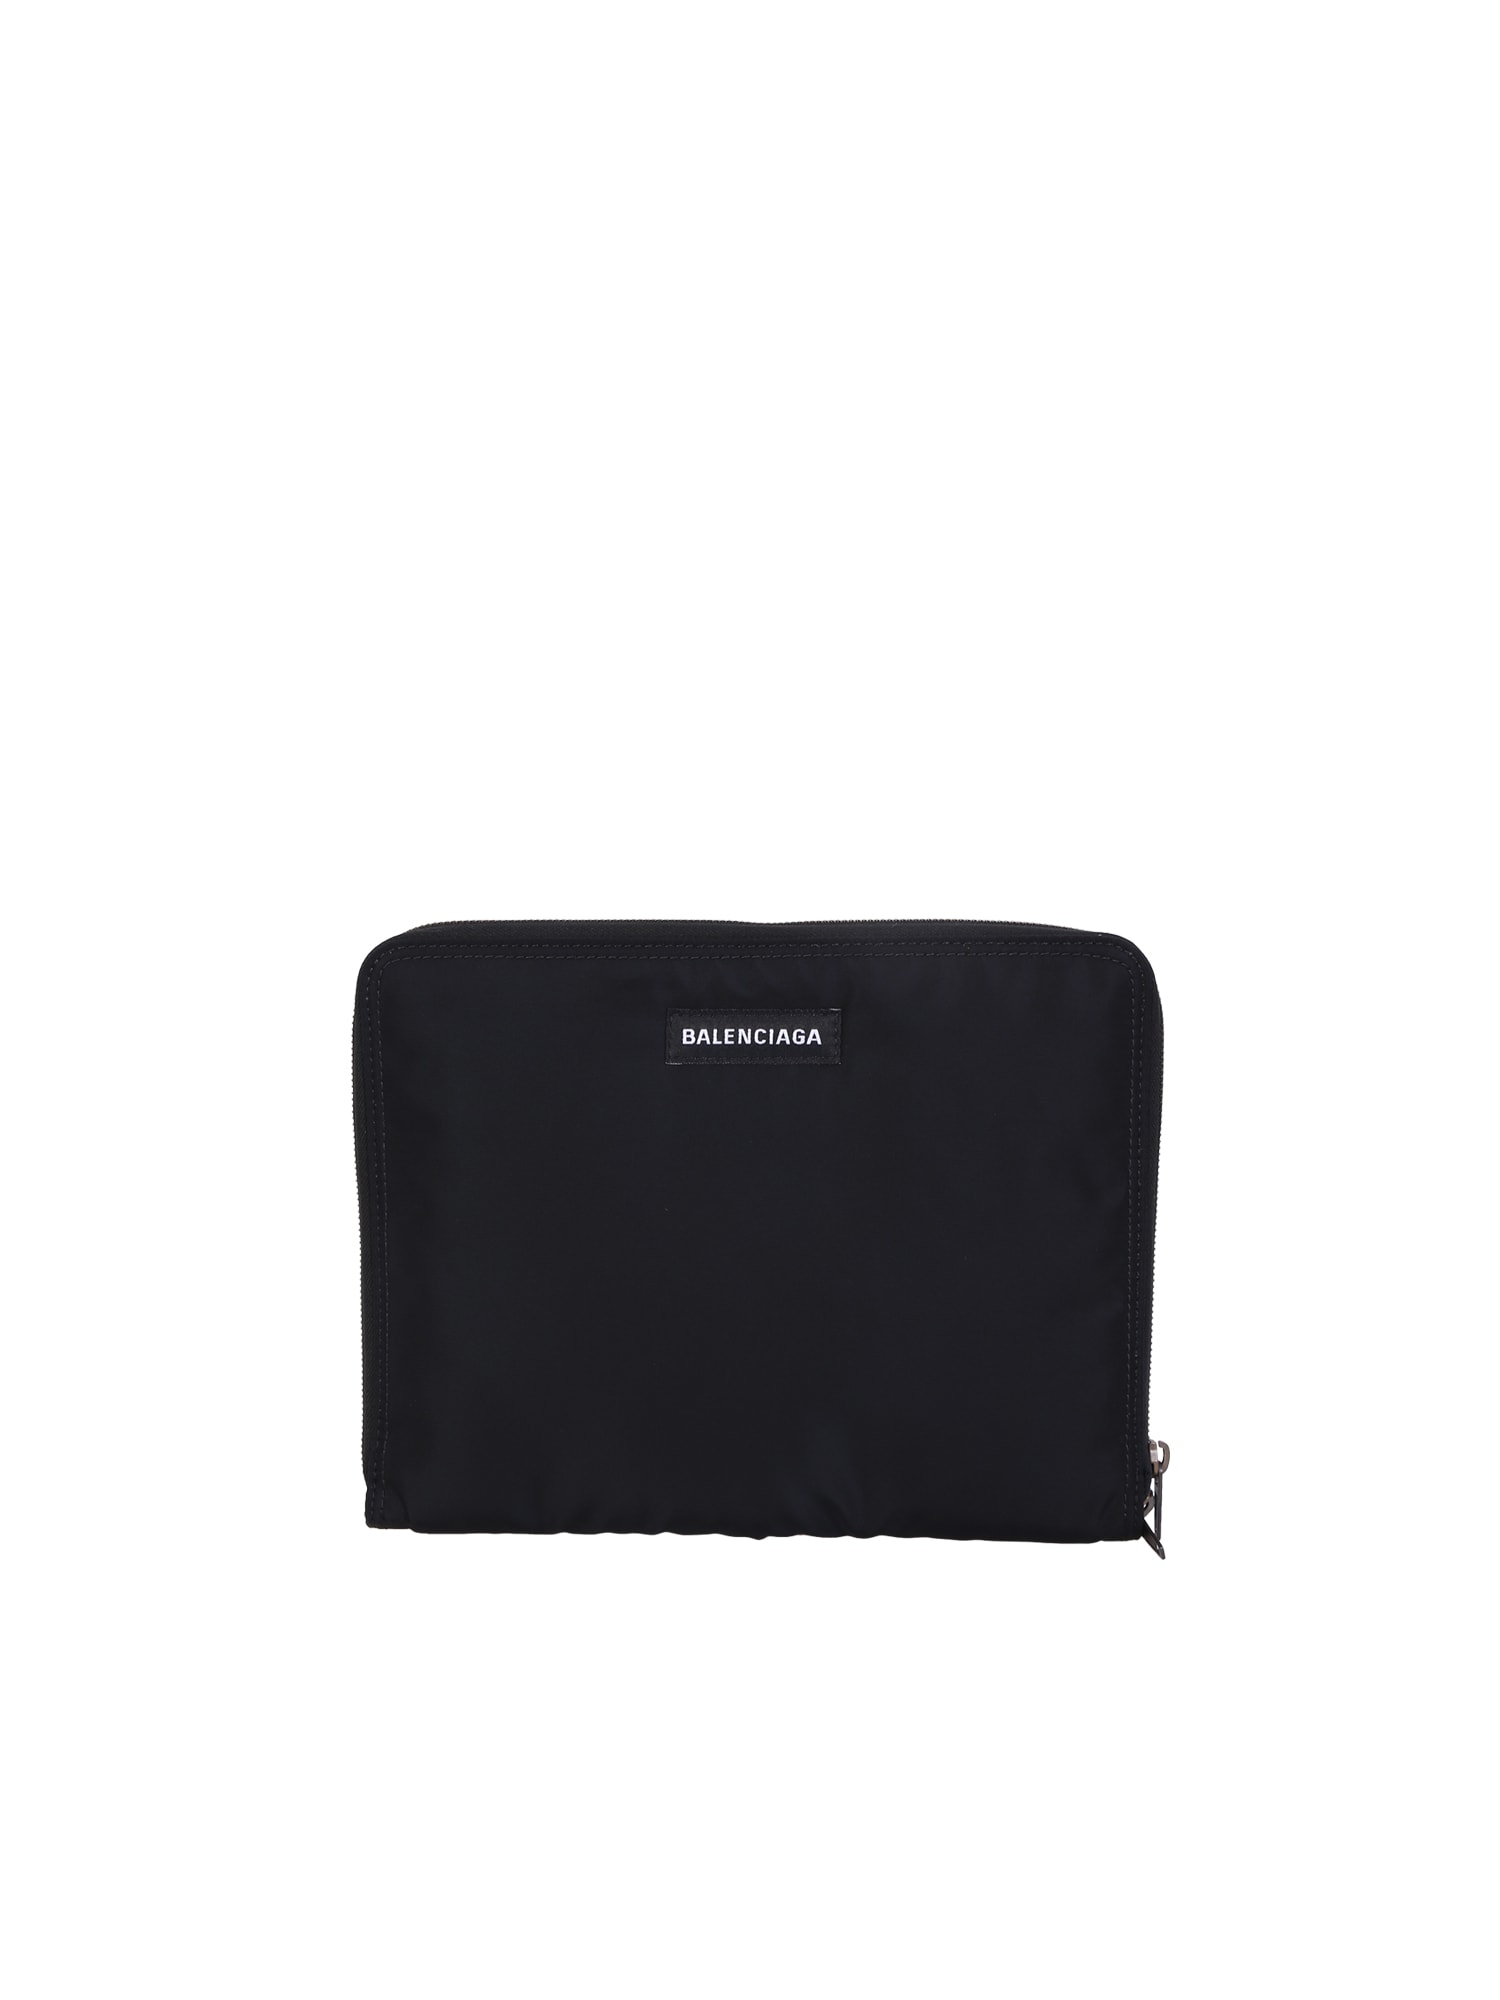 Balenciaga Ipad Case Bag